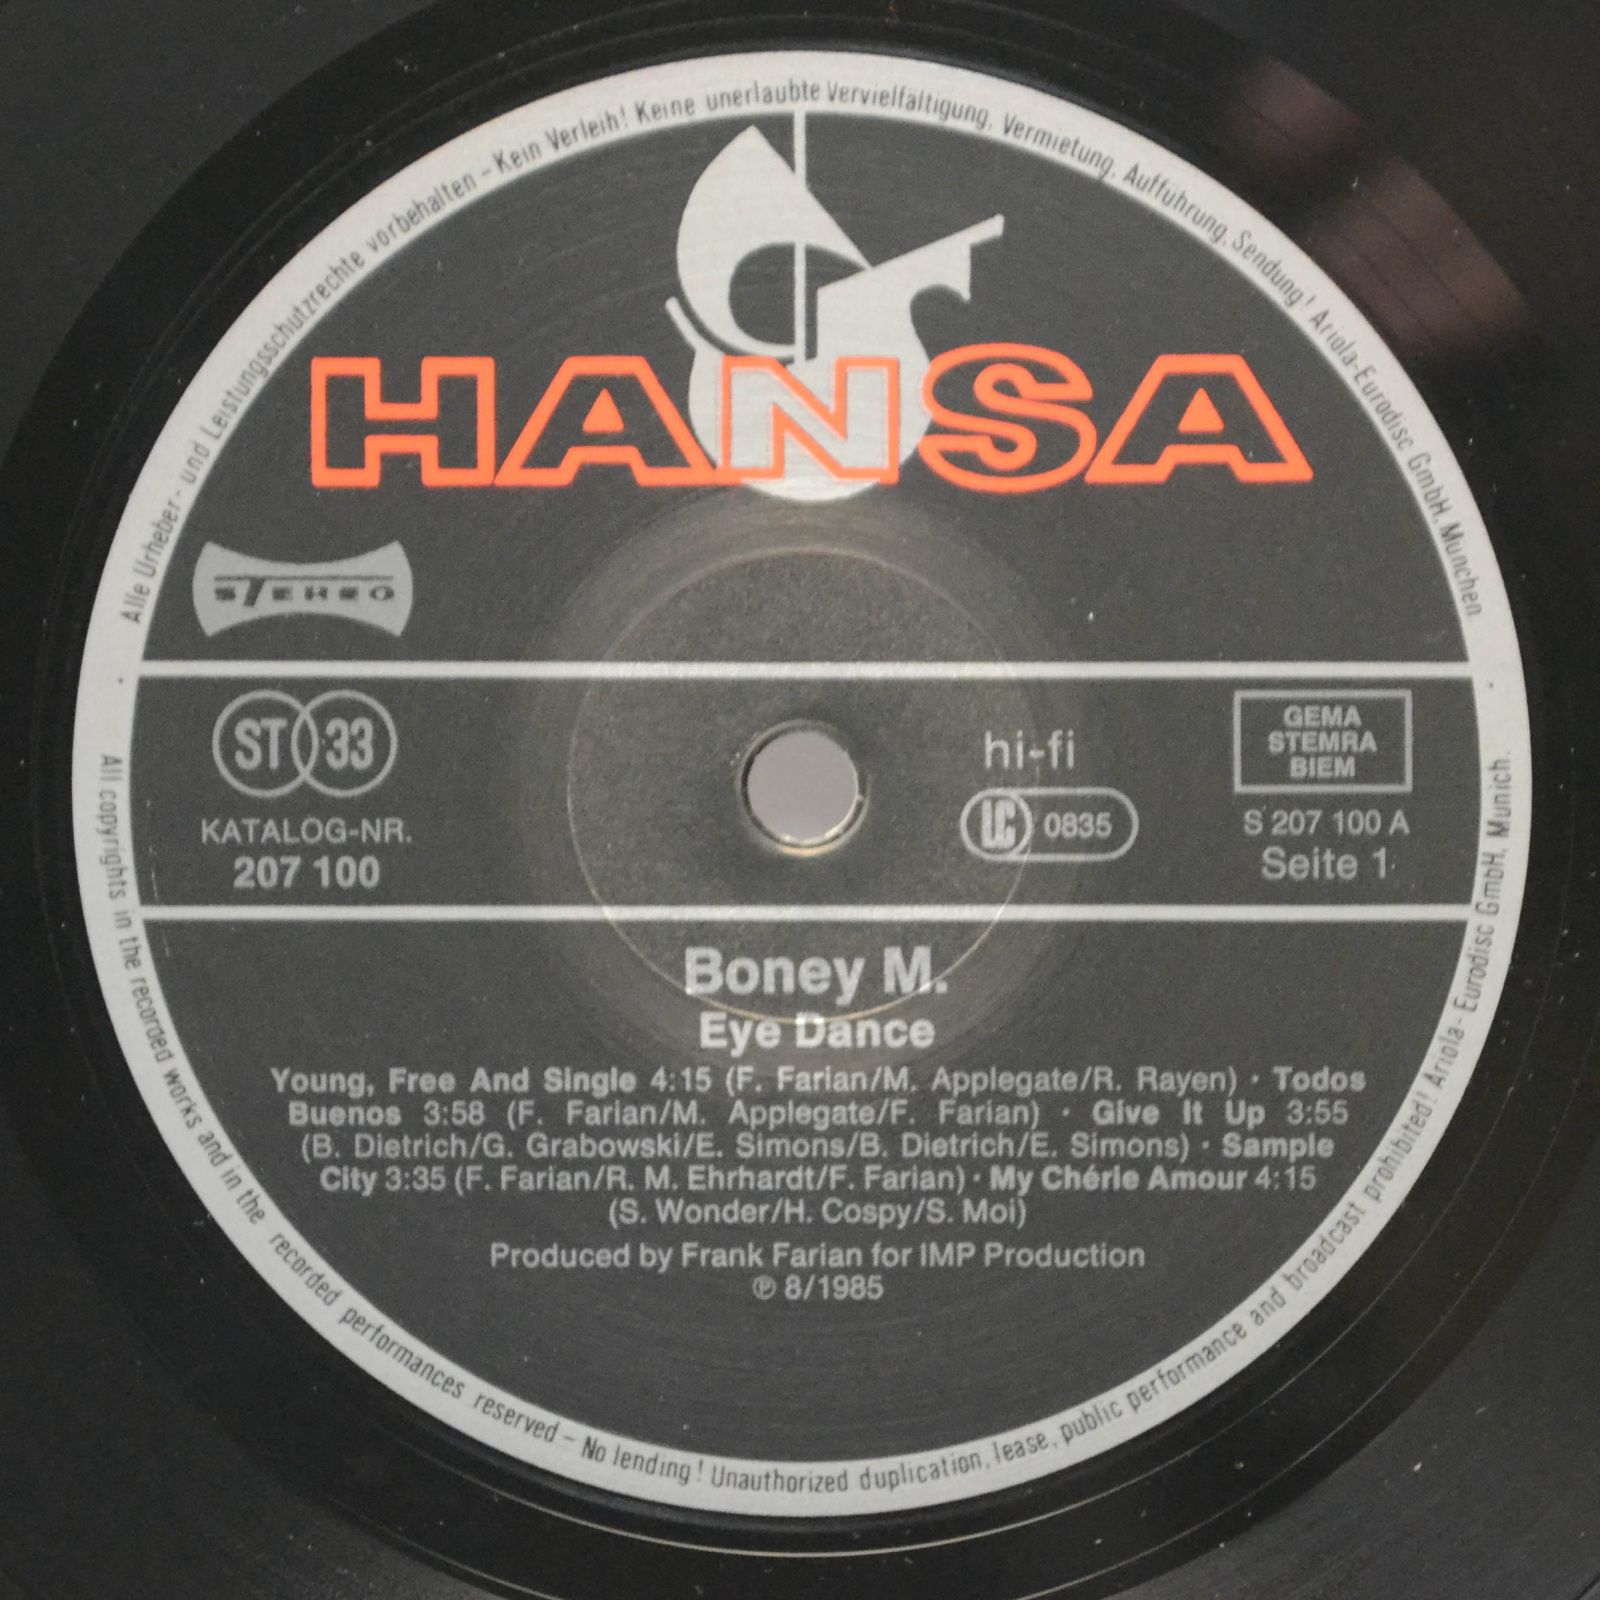 Boney M. — Eye Dance, 1985